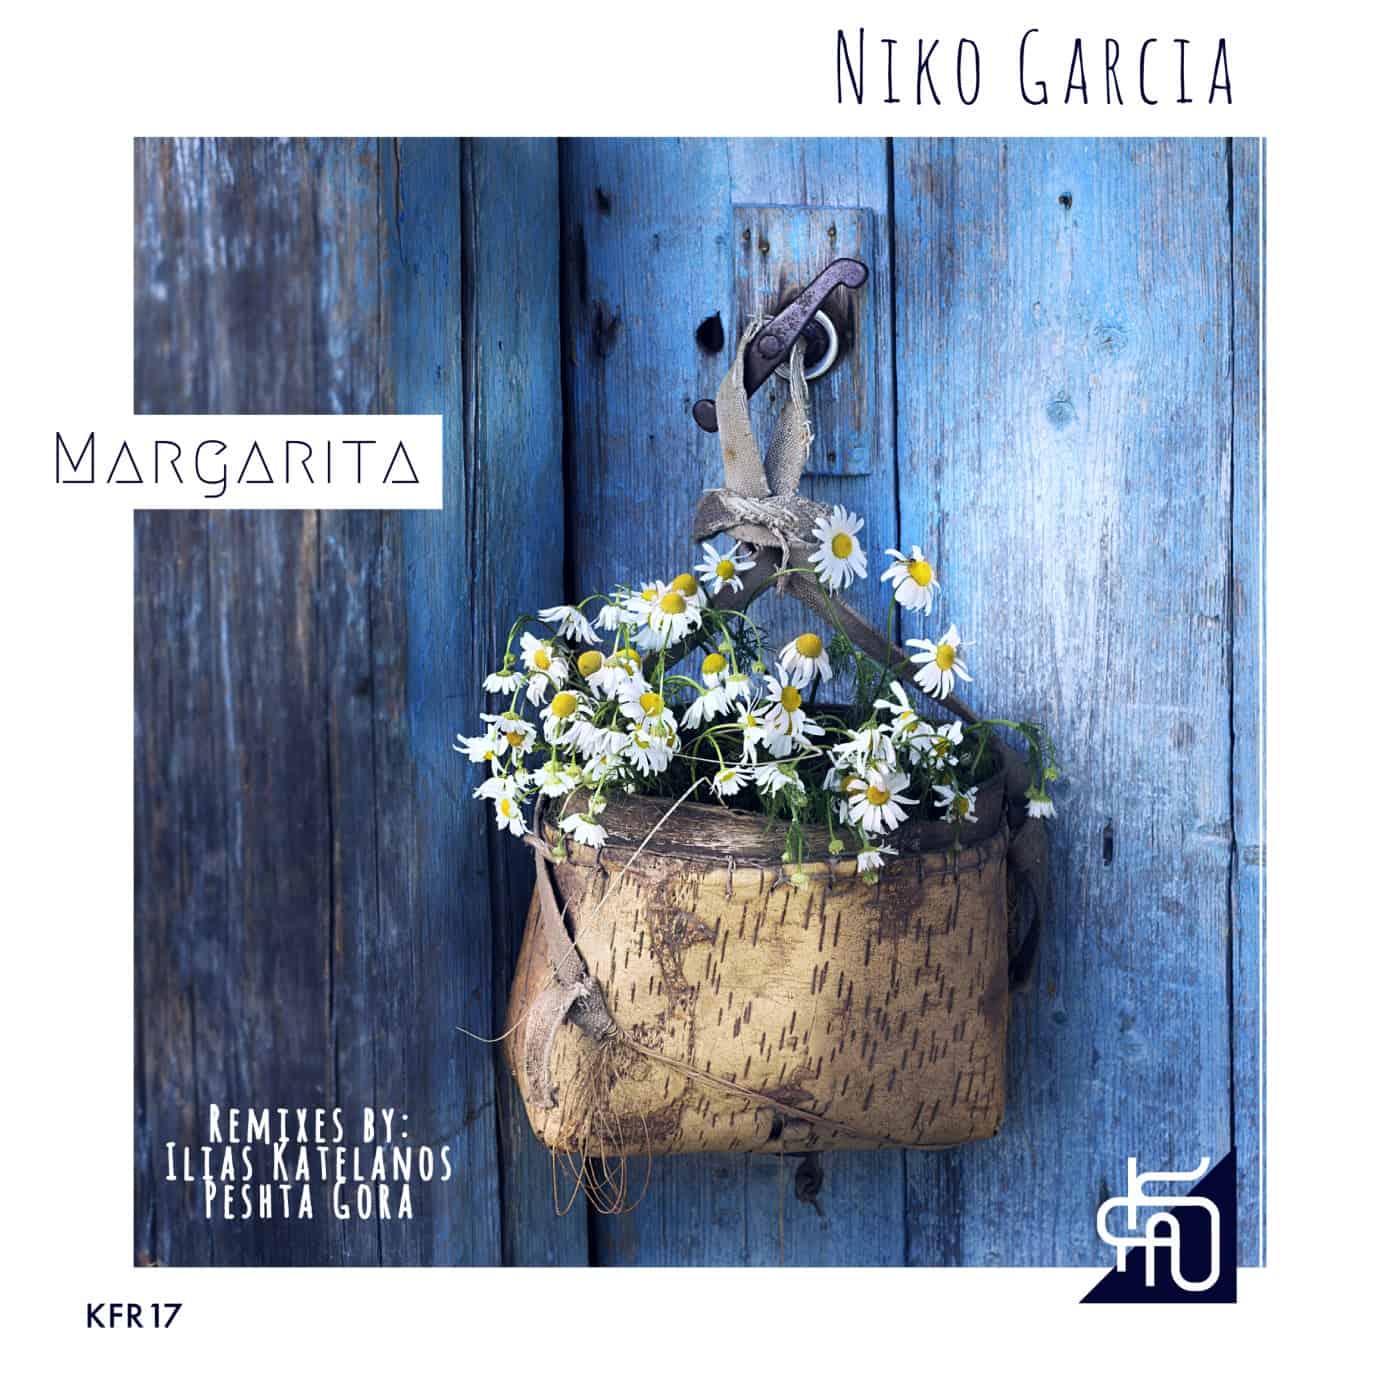 Download Niko Garcia - Margarita on Electrobuzz